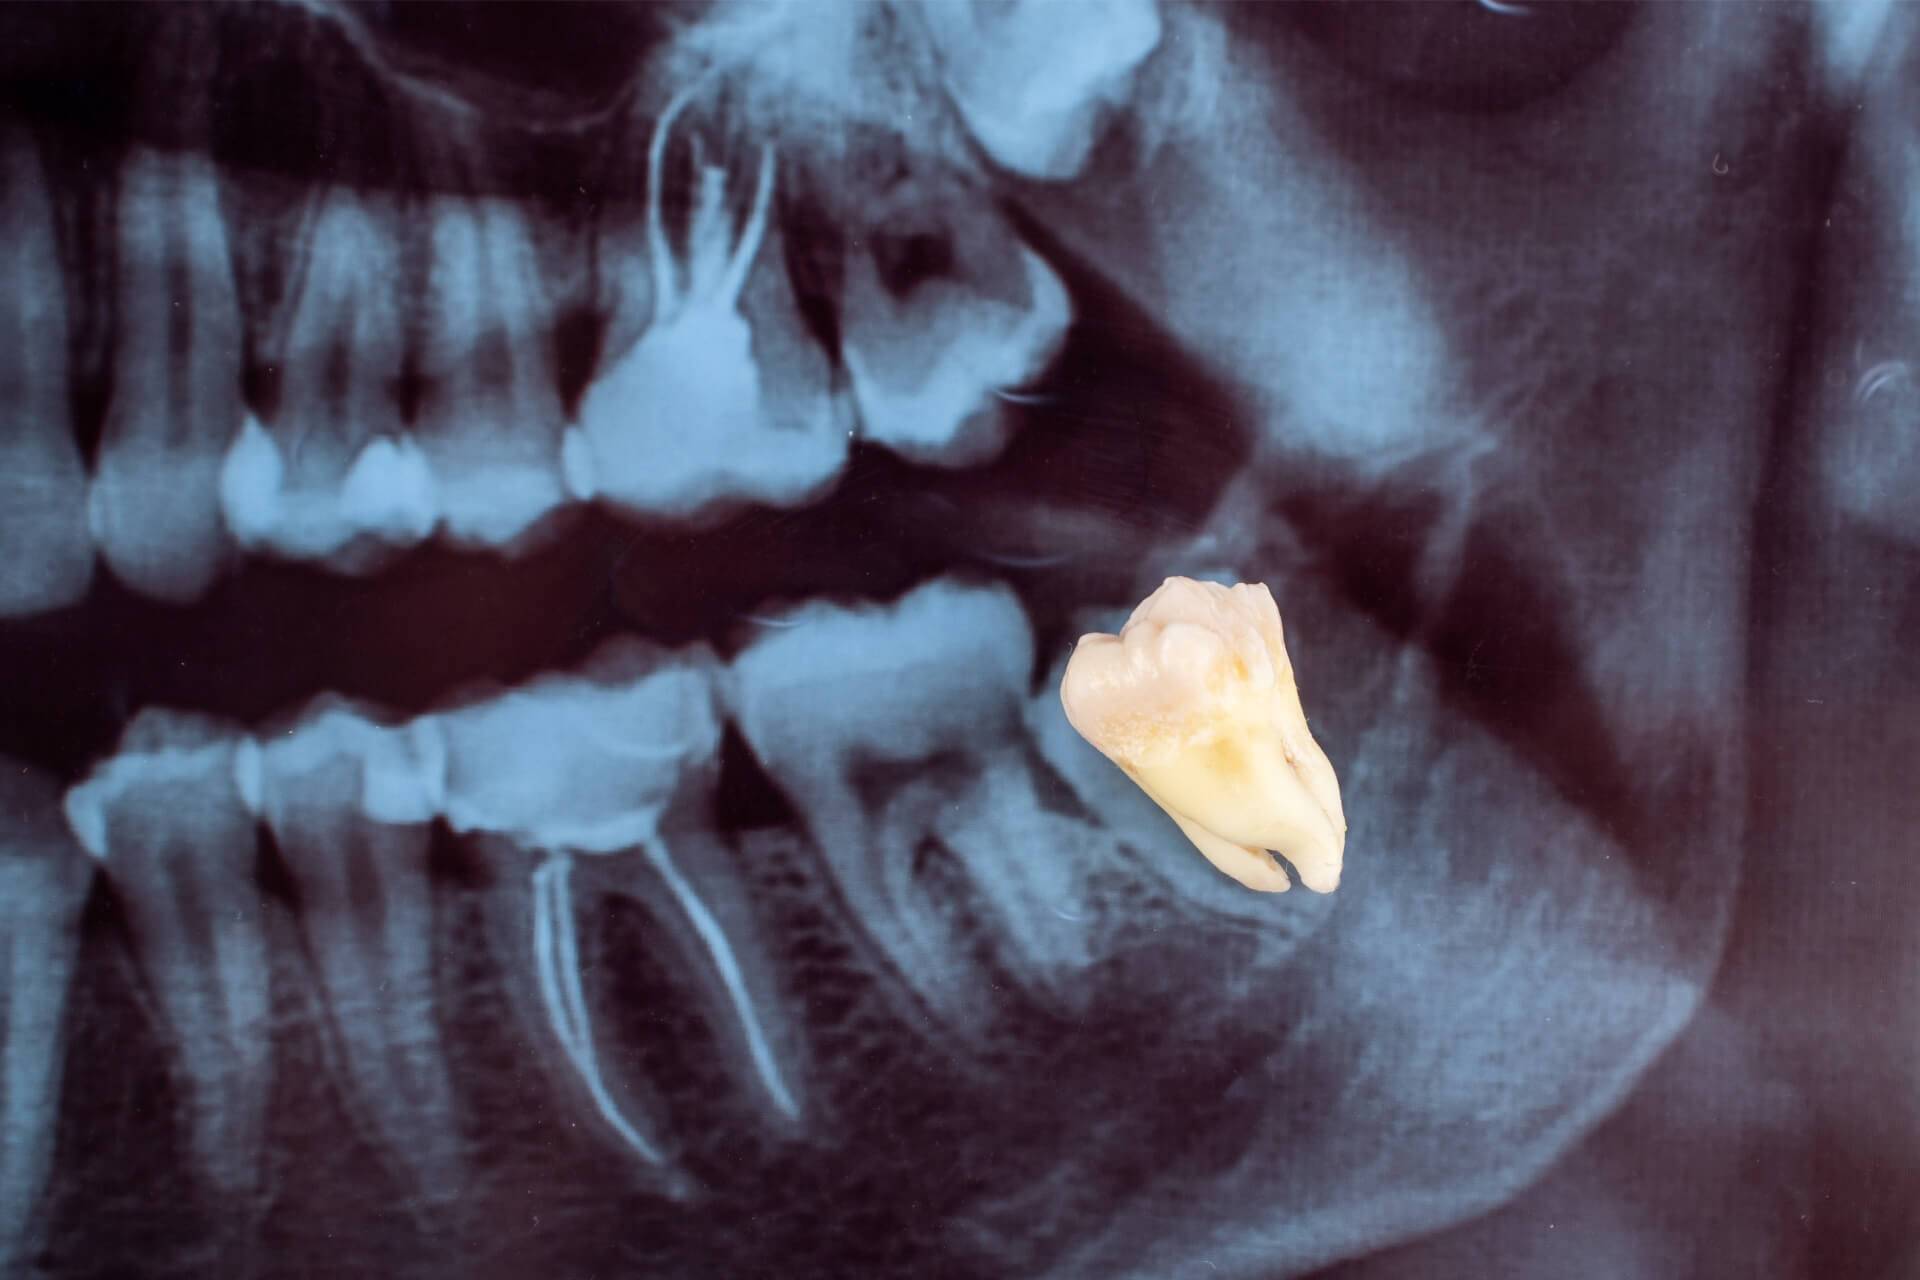 denti-giudizio-sintomi-estrazione-intervento-radiografia.jpg